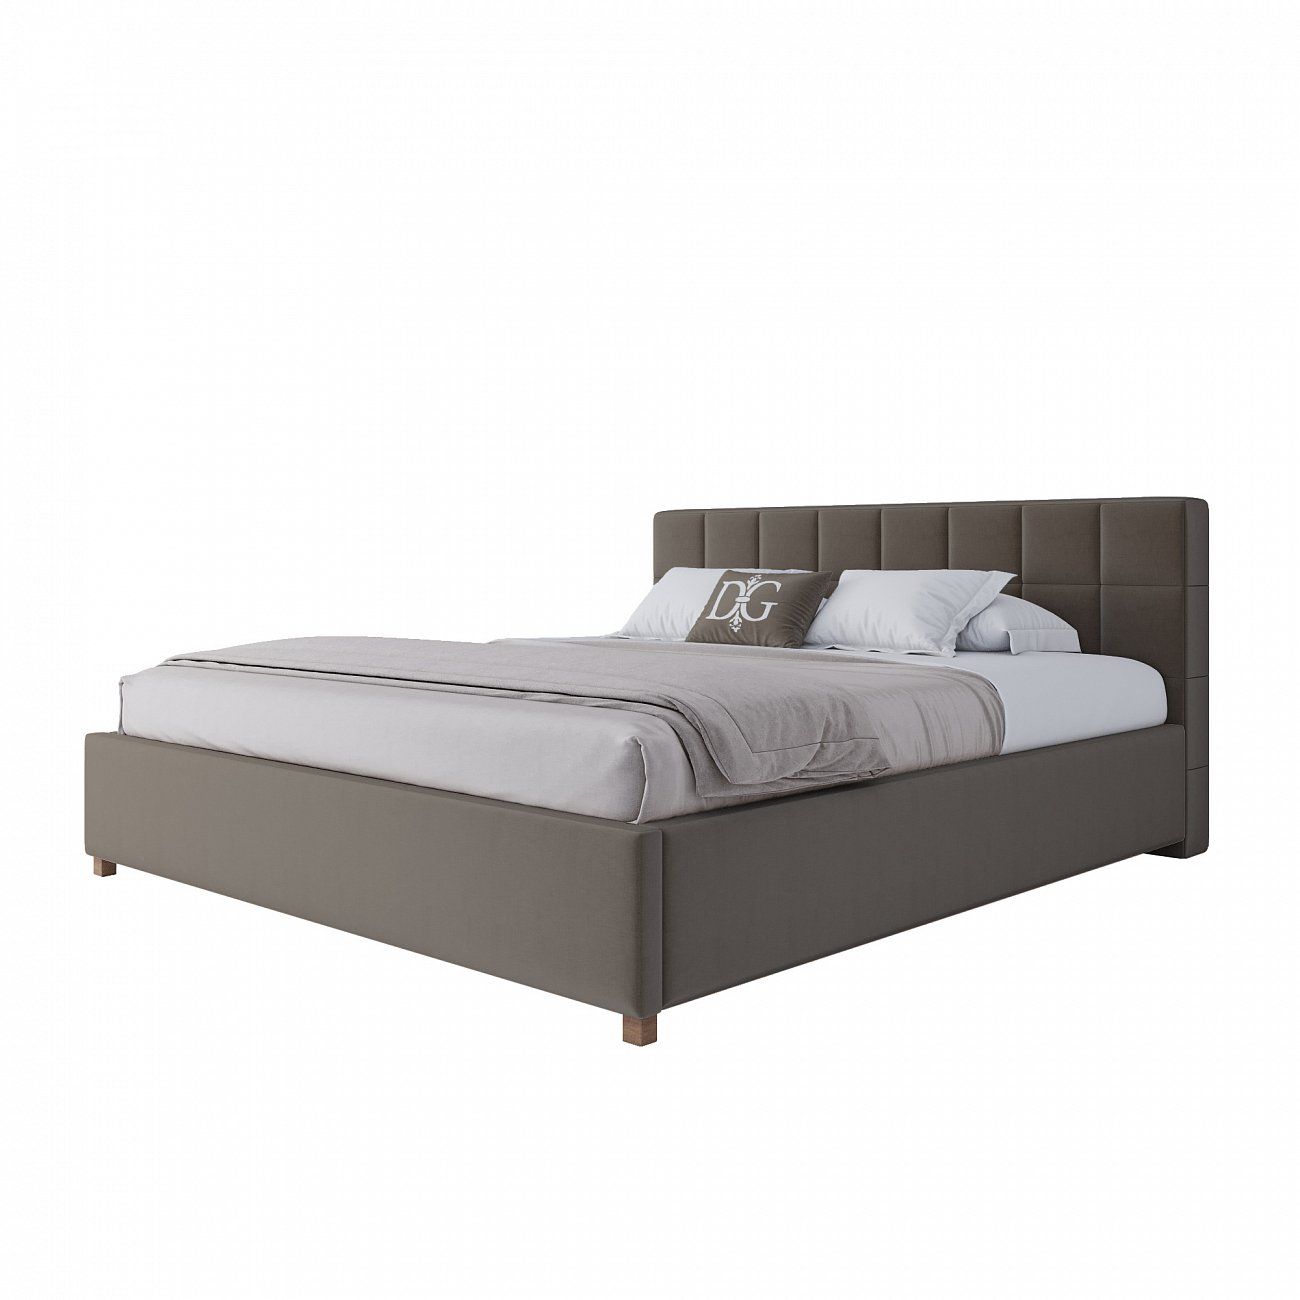 Кровать двуспальная 180х200 см серо-коричневая Wales